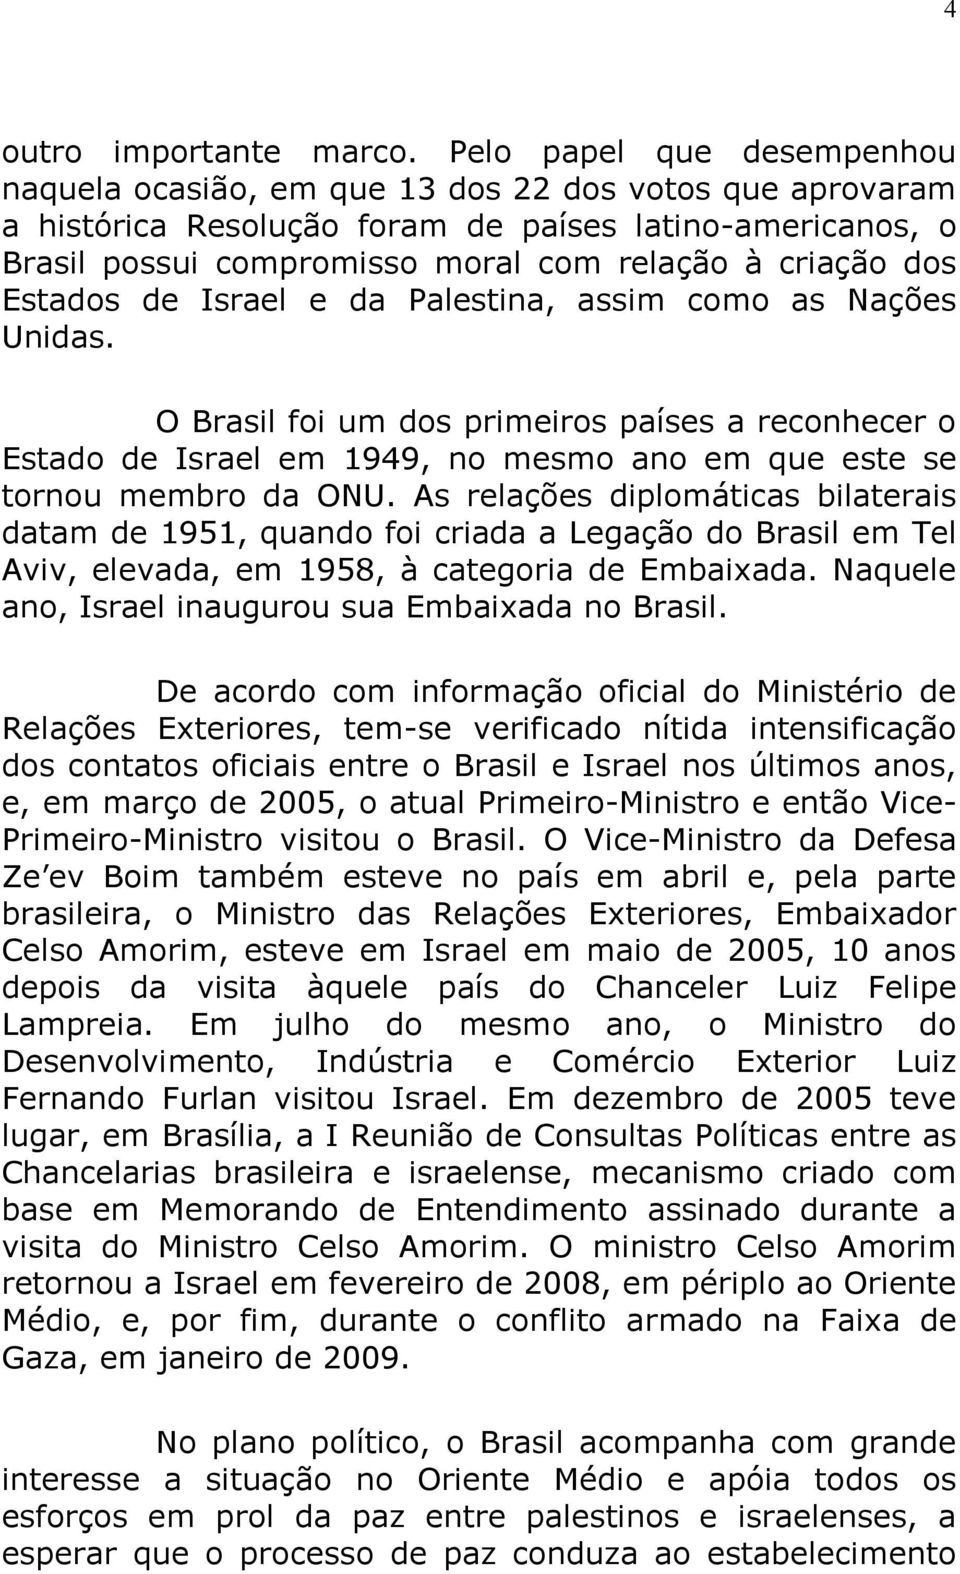 dos Estados de Israel e da Palestina, assim como as Nações Unidas. O Brasil foi um dos primeiros países a reconhecer o Estado de Israel em 1949, no mesmo ano em que este se tornou membro da ONU.